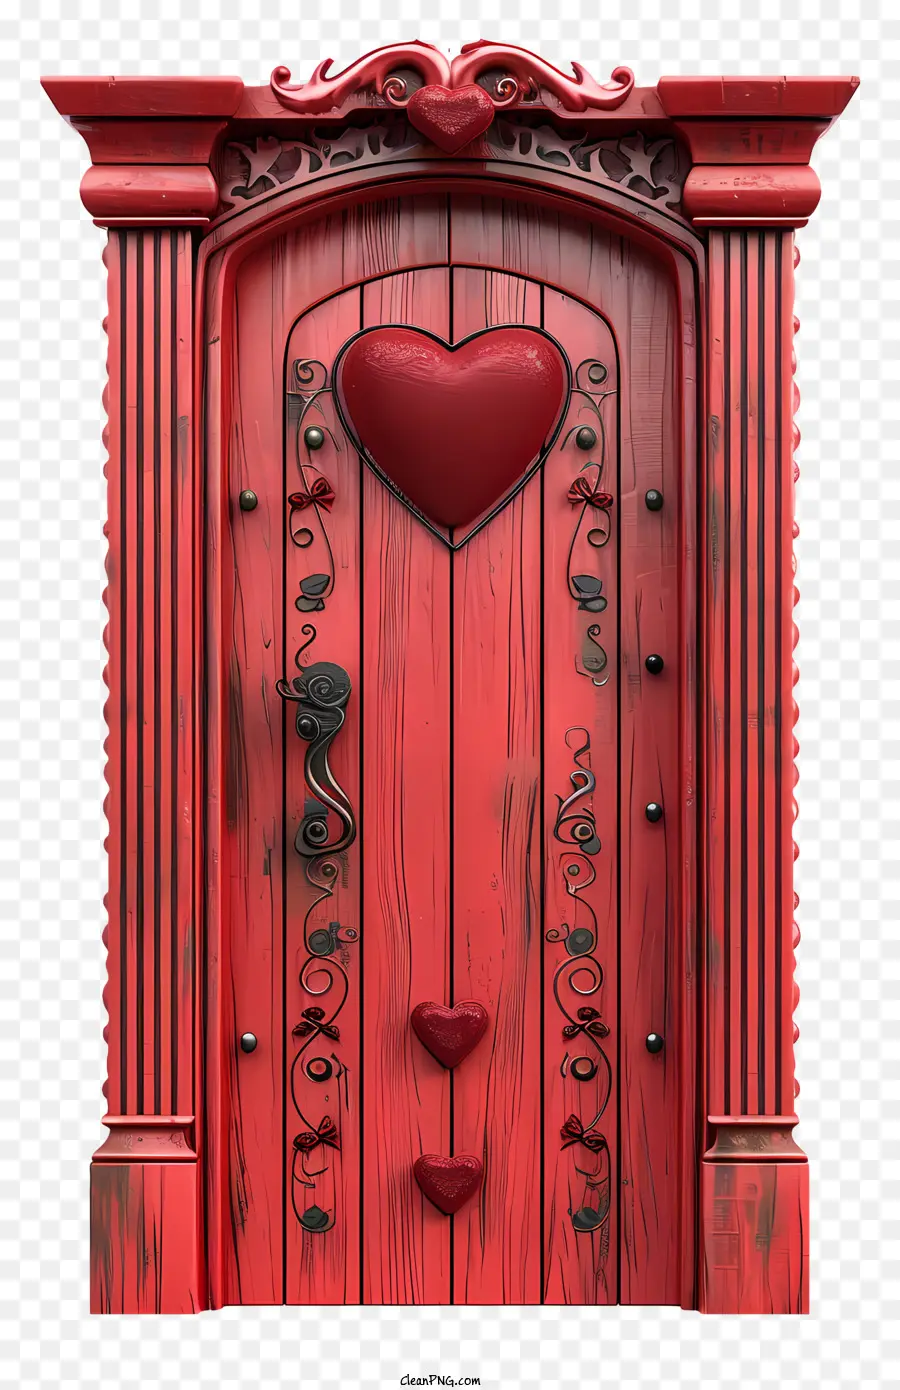 Herz symbol - Holztür mit rotem Herzen, Schnitzereien, offen